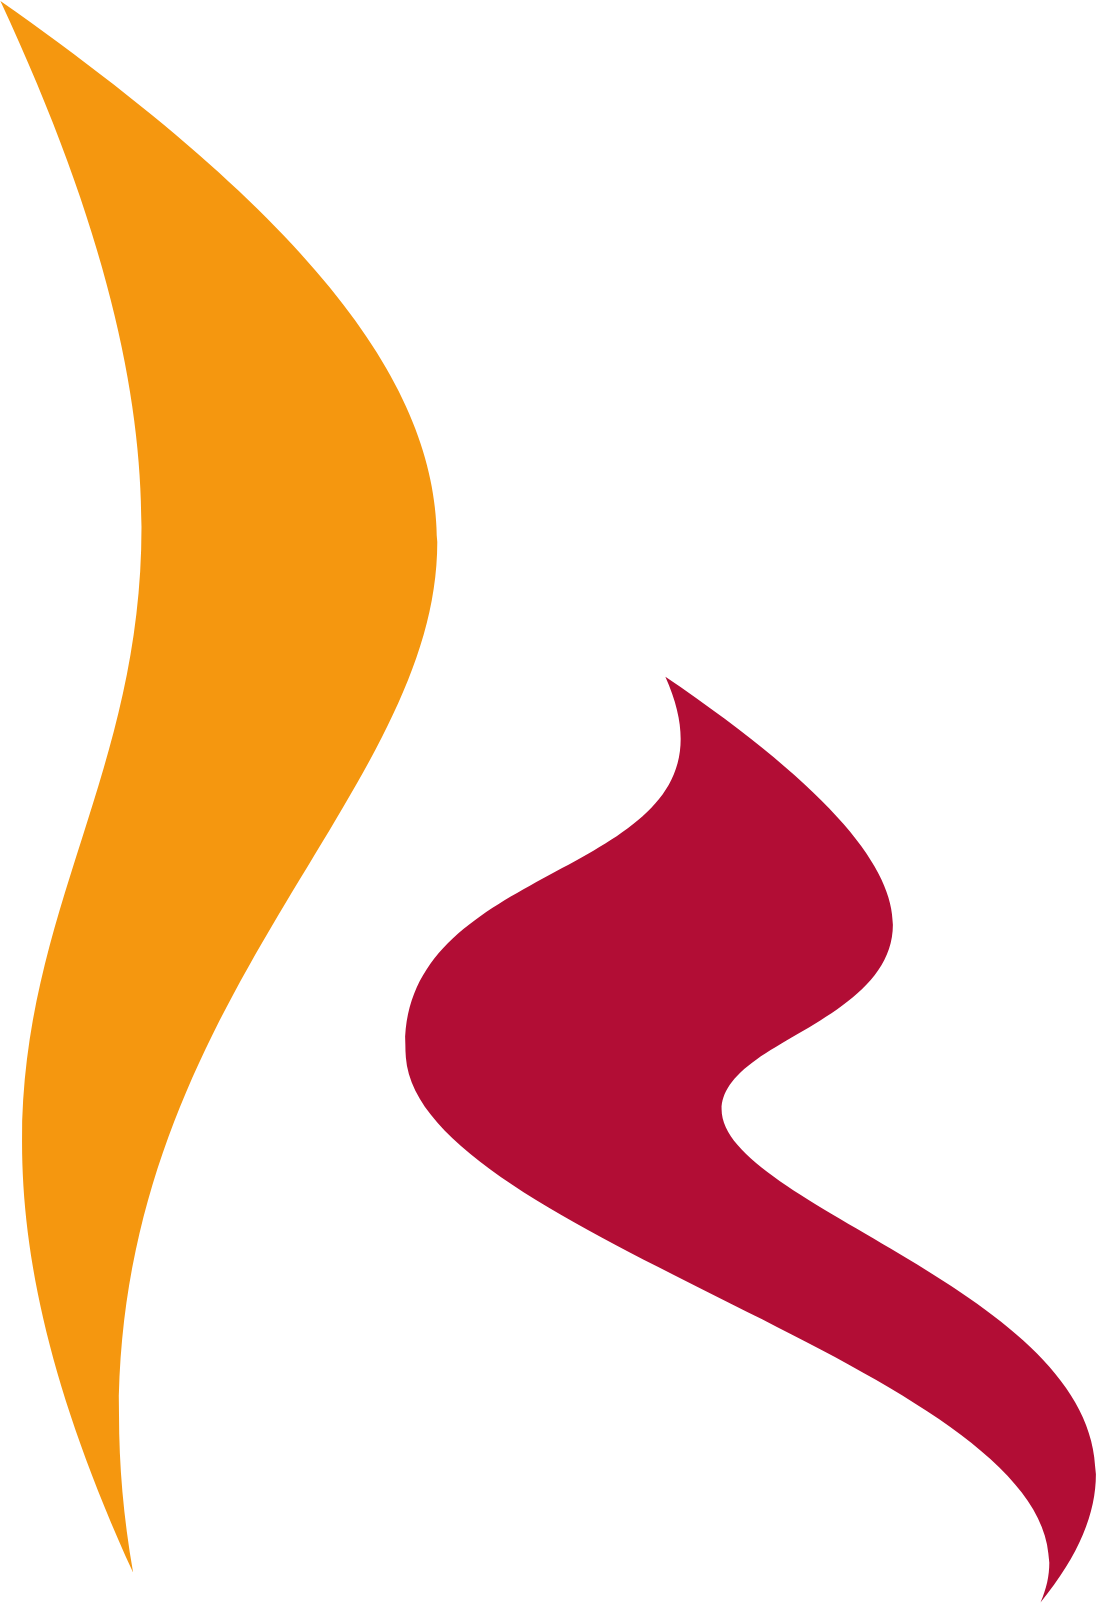 AmRest logo (transparent PNG)